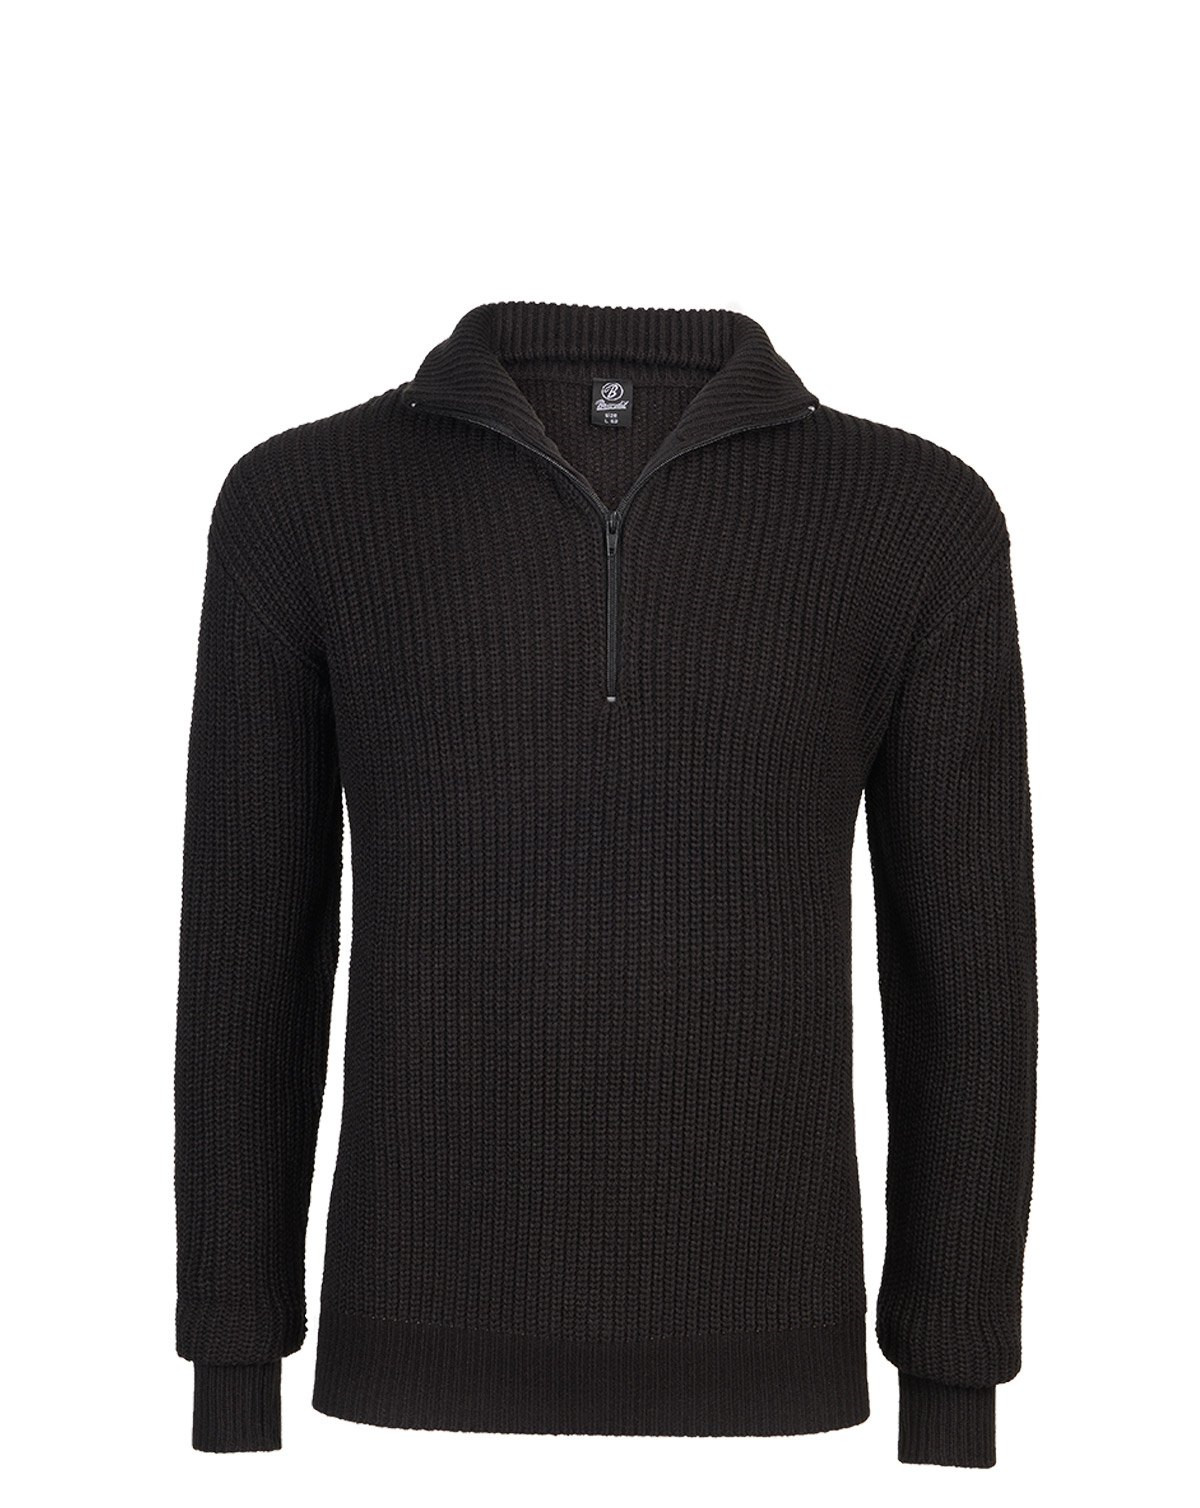 #2 - Brandit Marine Pullover Troyer Sweater (Sort, 4XL)